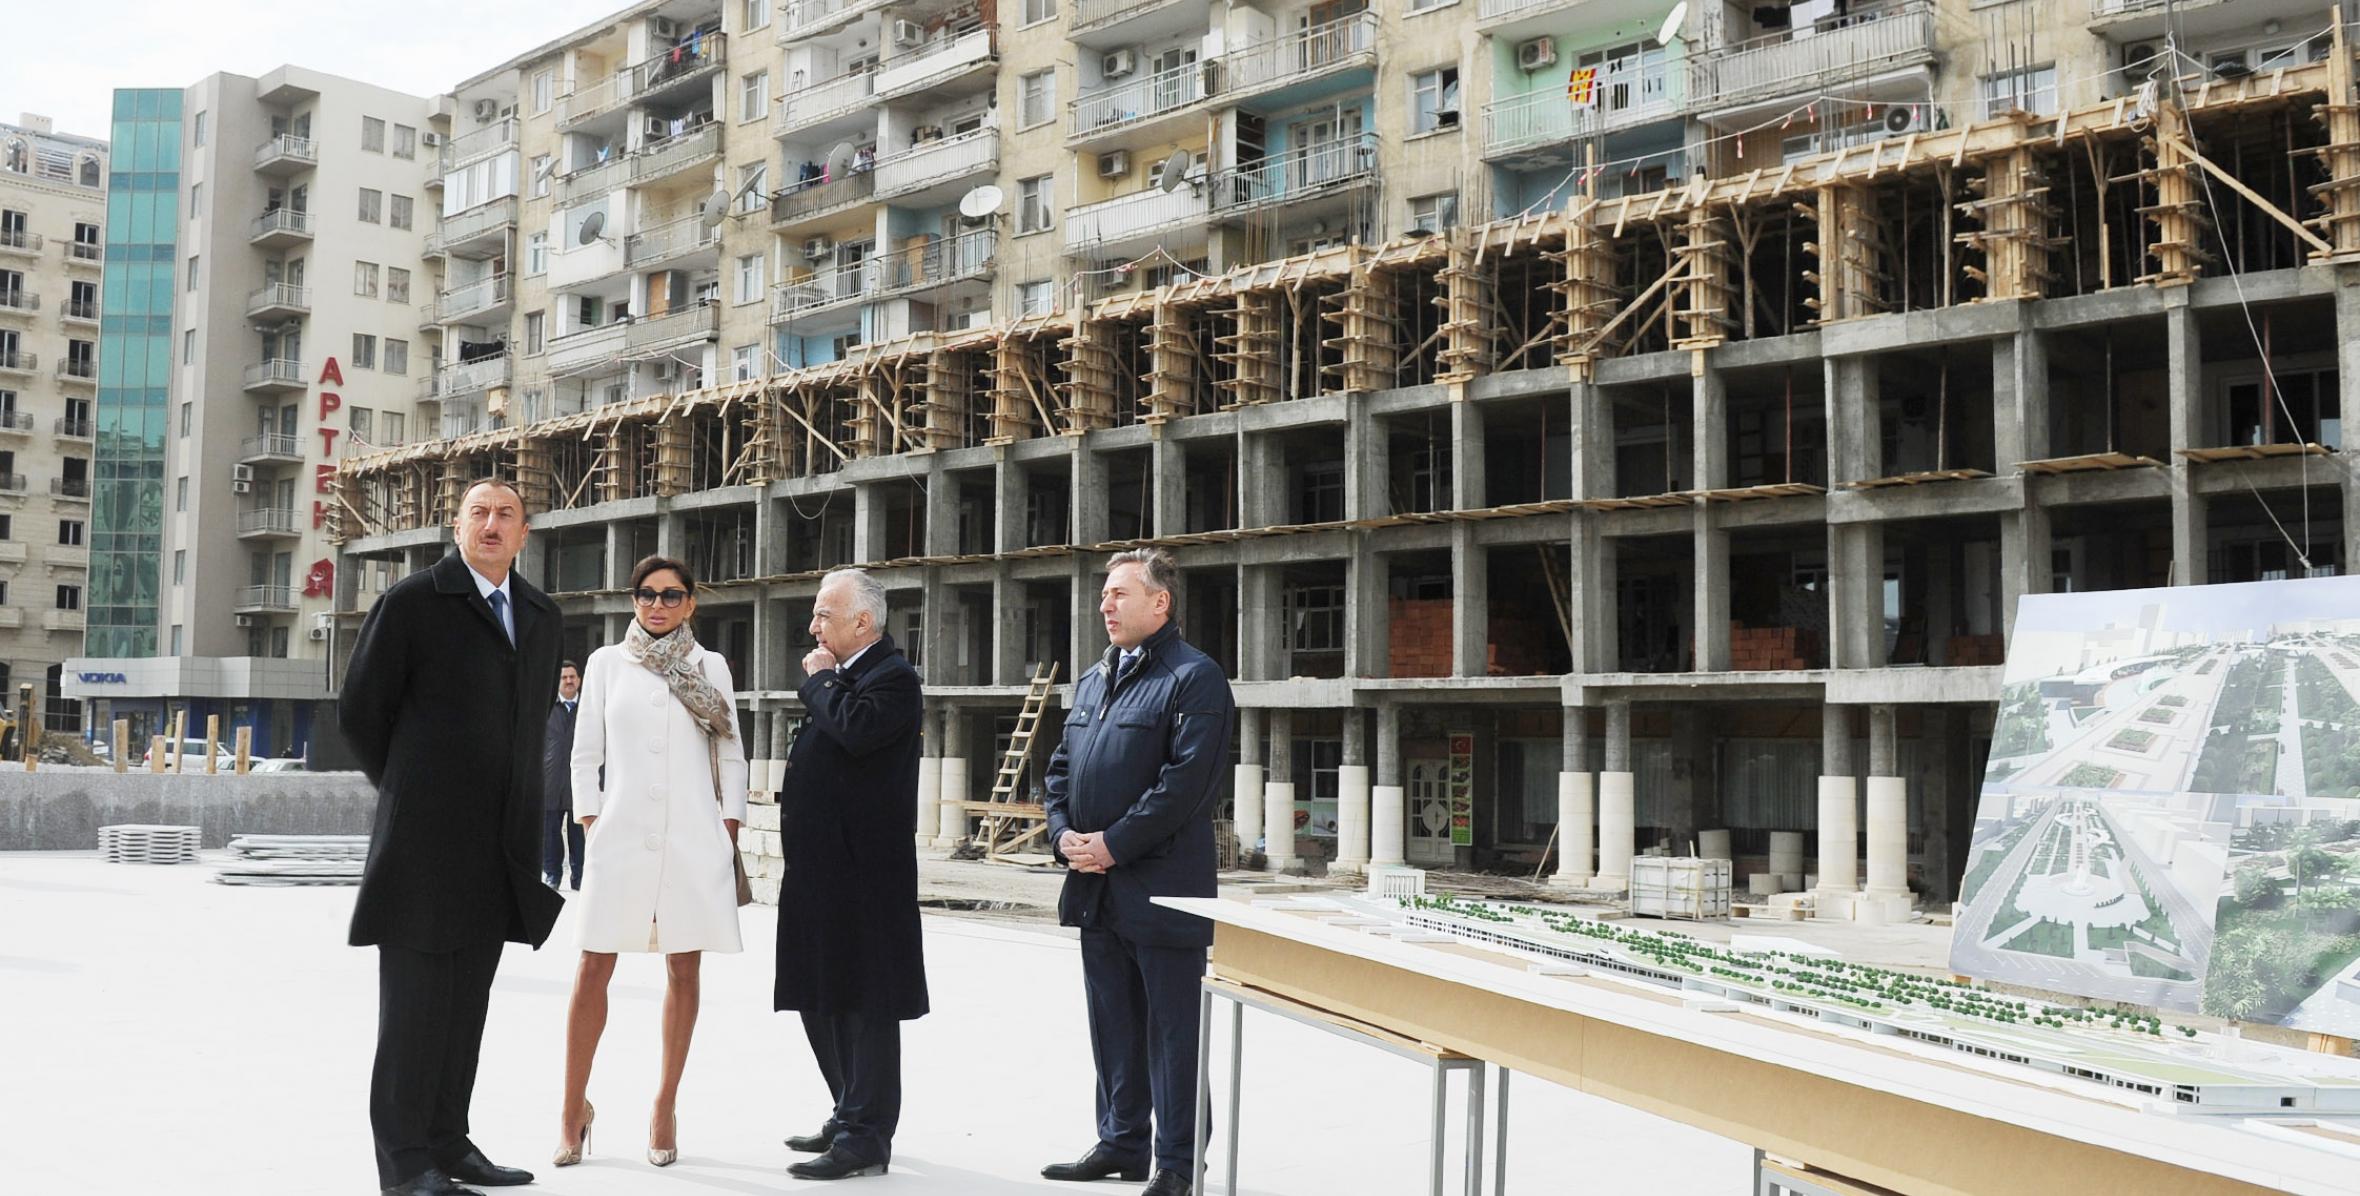 Президент Азербайджана Ильхам Алиев ознакомился с ходом строительных работ в подземной автостоянке, наземном комплексе парка, сада и фонтанов между улицами Физули и Мирзаги Алиева в Баку